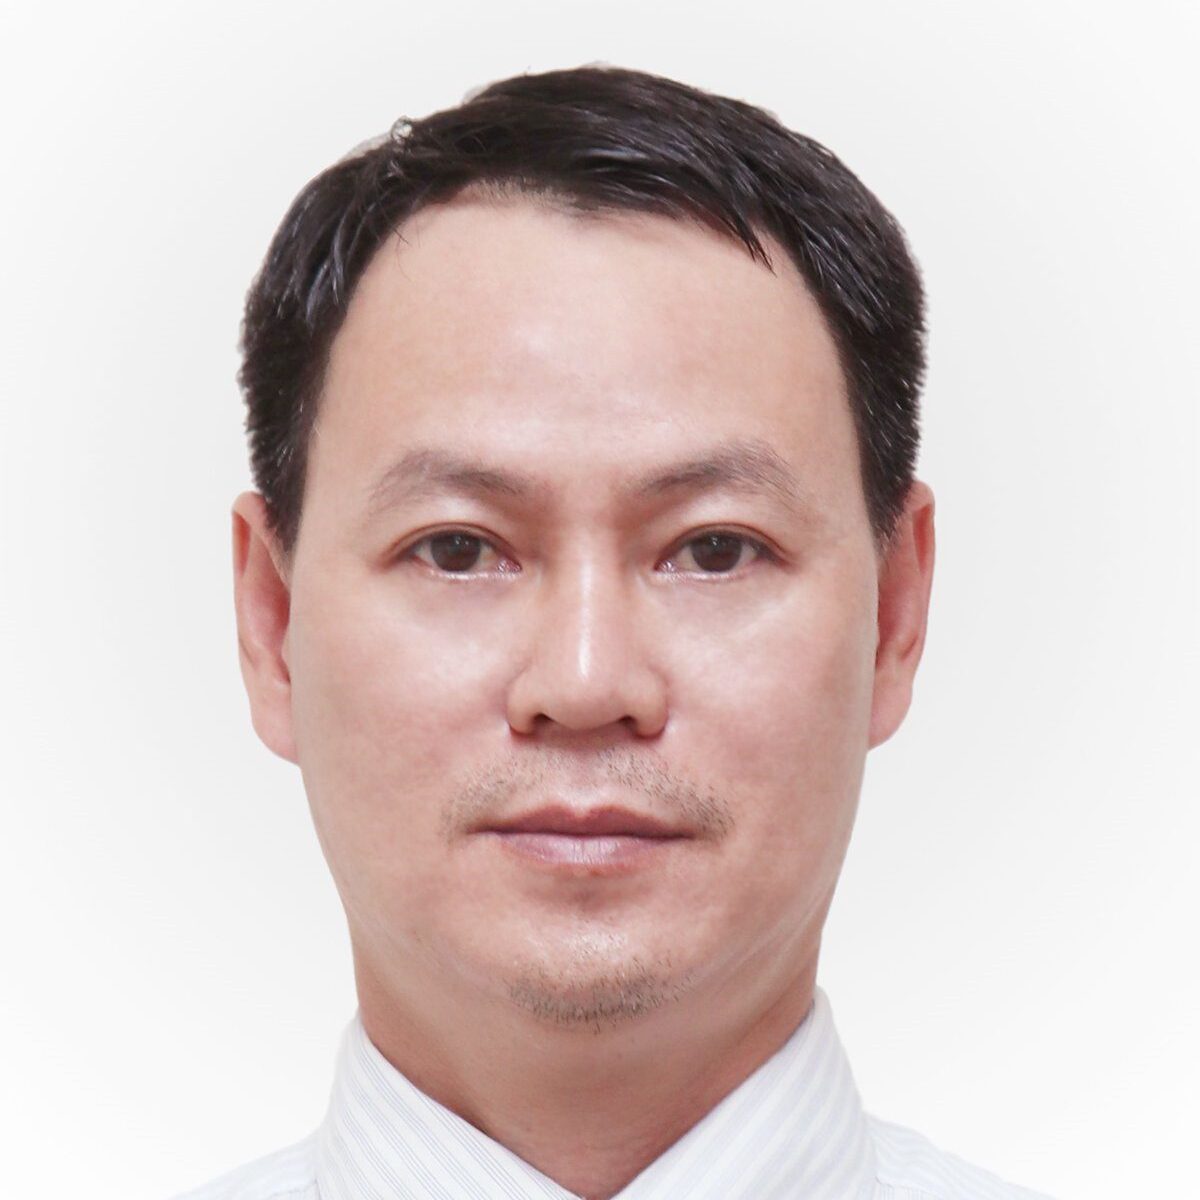 Luật sư Võ Tâm - thuộc top luật sư giỏi tại Bình Dương